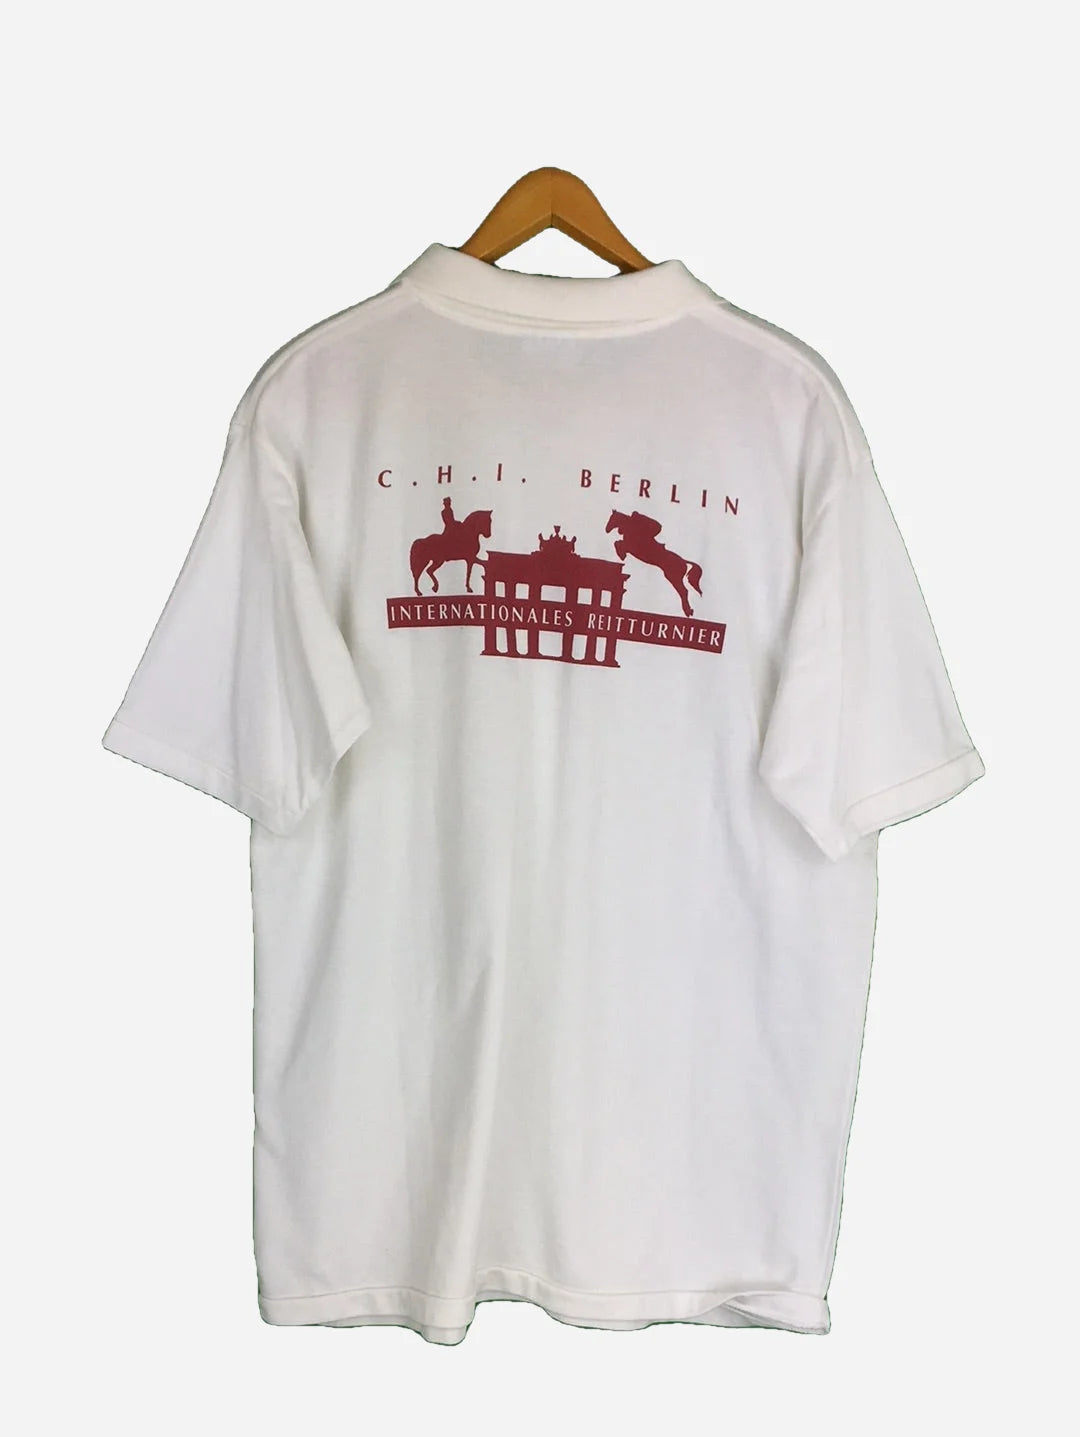 Schultheiss Berlin T-Shirt (XL)